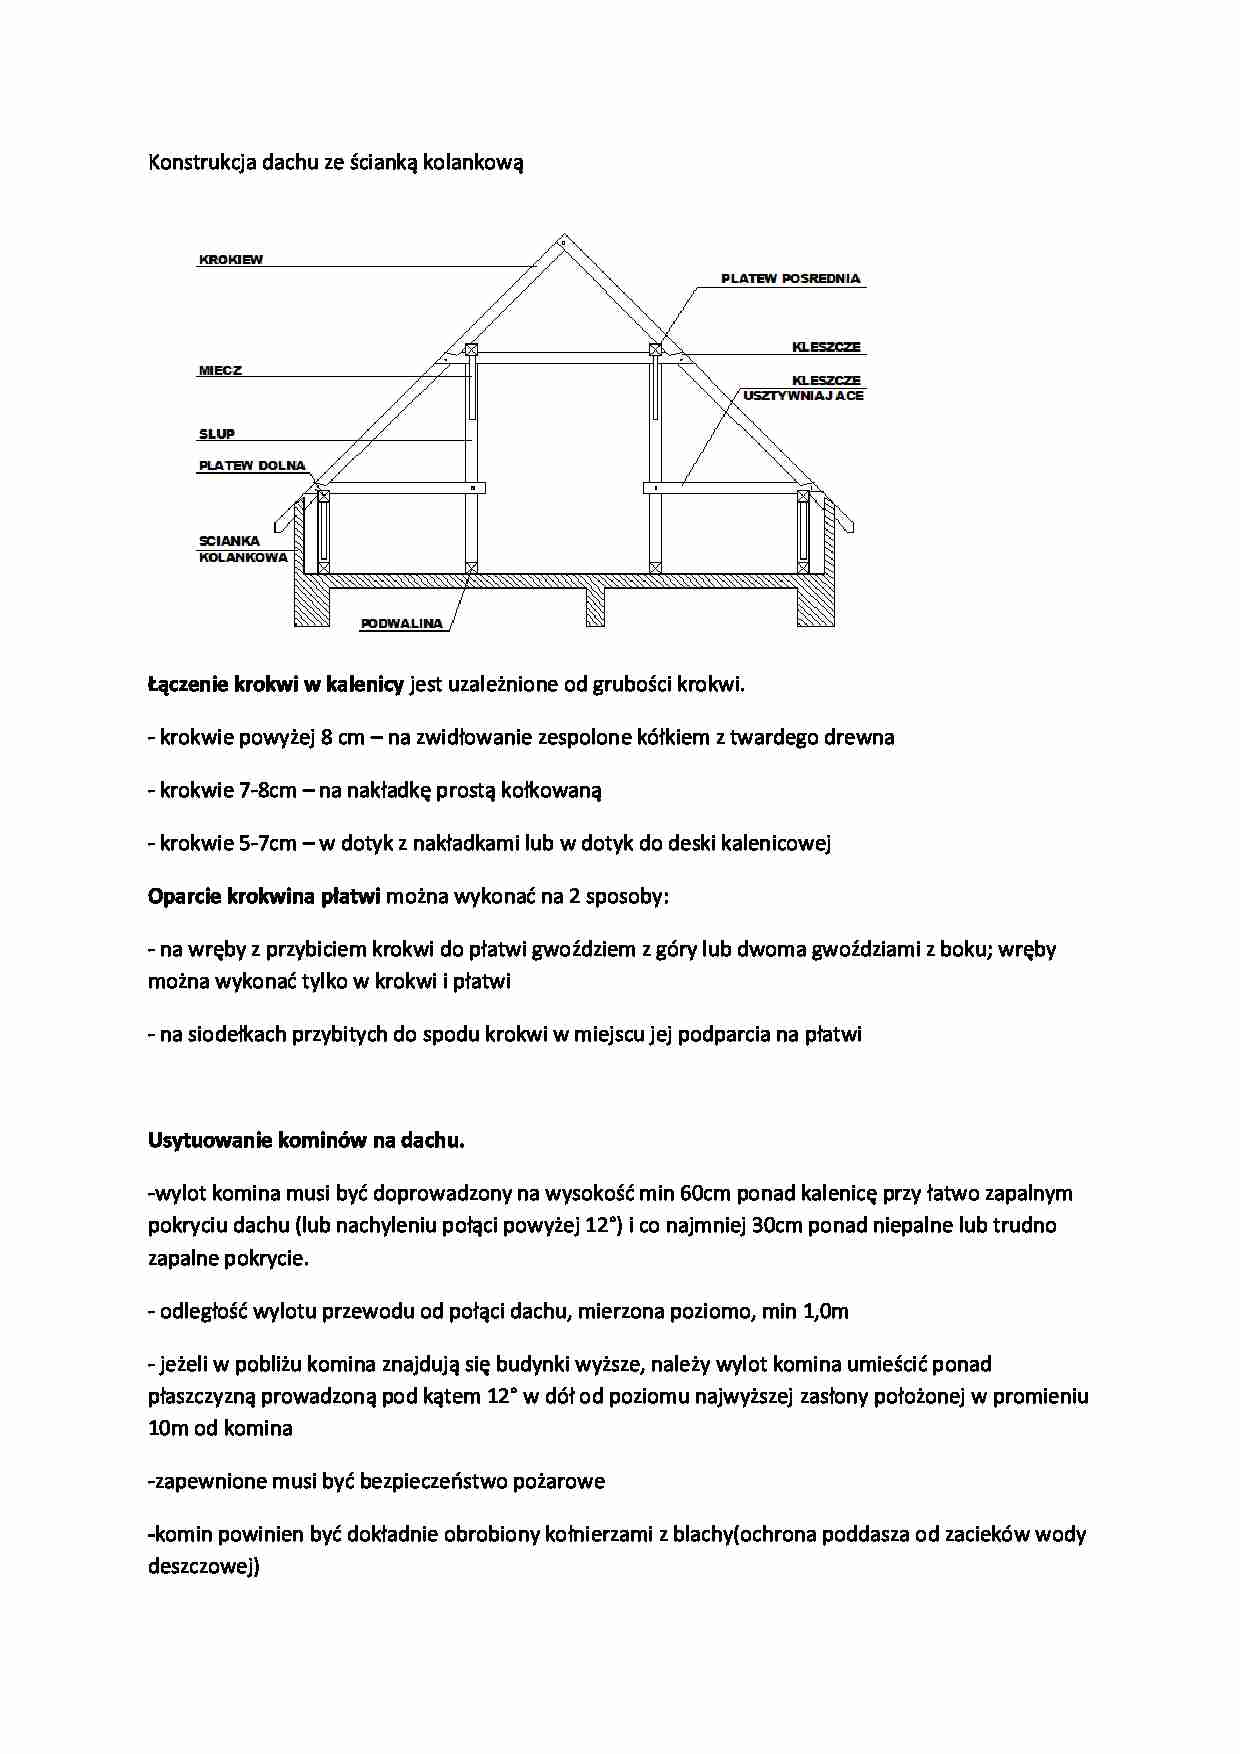 Konstrukcja dachu ze ścianką  kolankową i usytuowanie kominów na dachu - strona 1